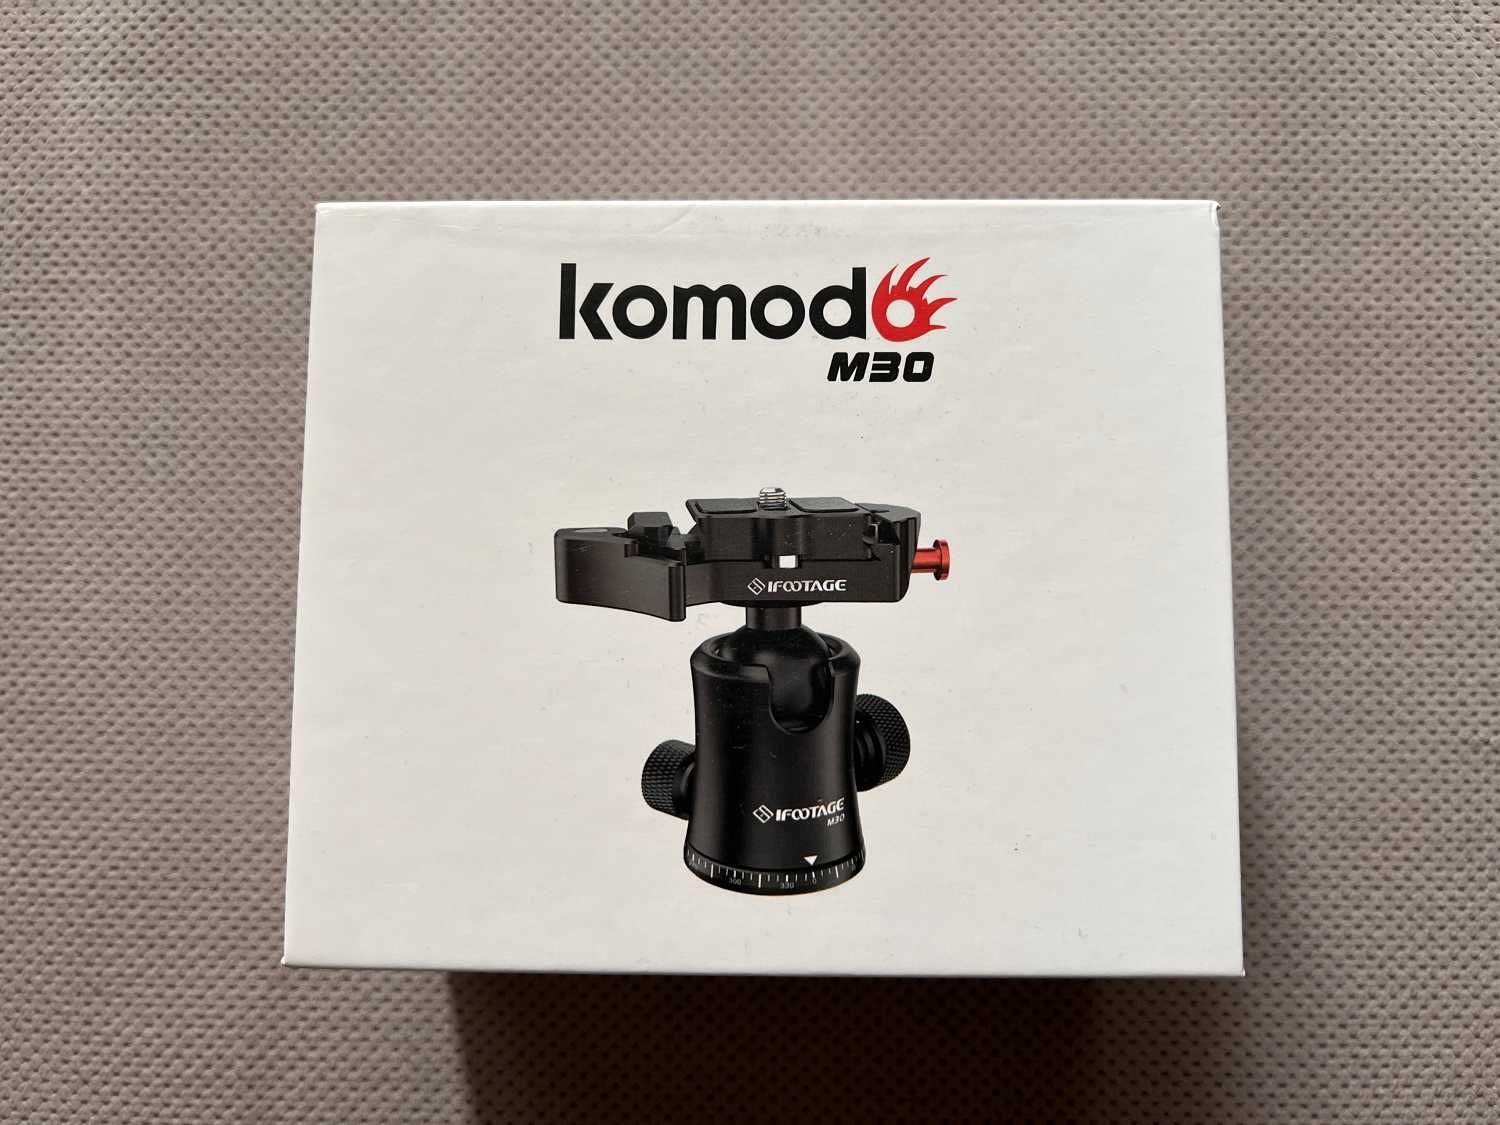 Głowica fotograficzna kulowa Komodo M30 firmy iFootage (IGłA)